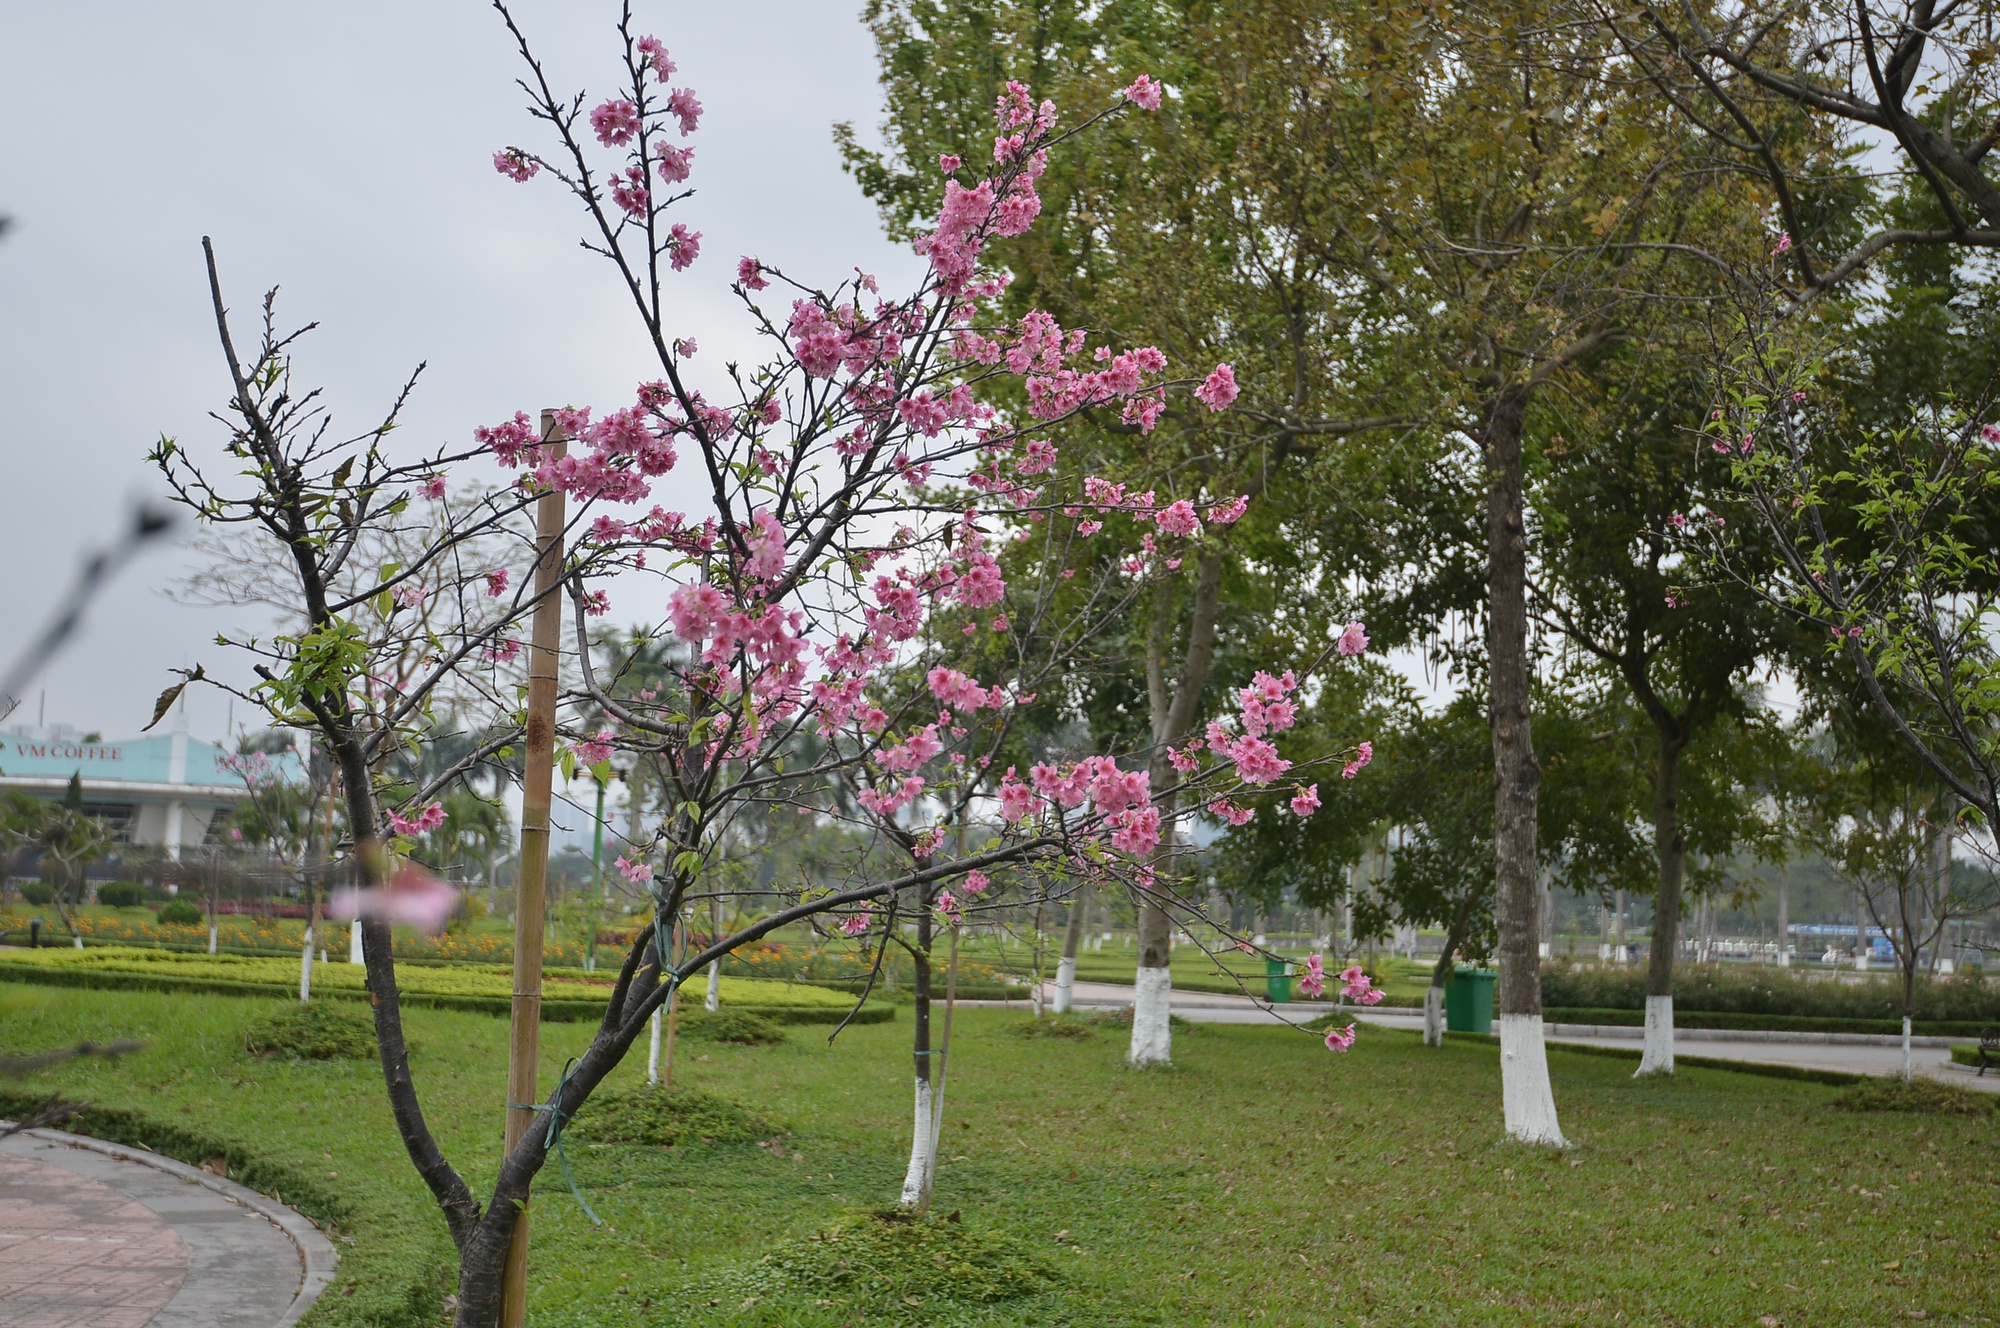 Chia sẻ với báo chí vào năm 2021 về nguồn gốc những cây hoa anh đào Nhật Bản được trồng tại Công viên Hòa Bình, cán bộ Phòng Hạ tầng kỹ thuật (Sở Xây dựng Hà Nội) cho biết, một số cây hoa anh đào trên do các tổ chức hữu nghị, công ty, tập đoàn của Nhật Bản như Hội Hữu nghị Việt Nhật Chukyo, Tập đoàn Aeon... trao tặng thành phố.